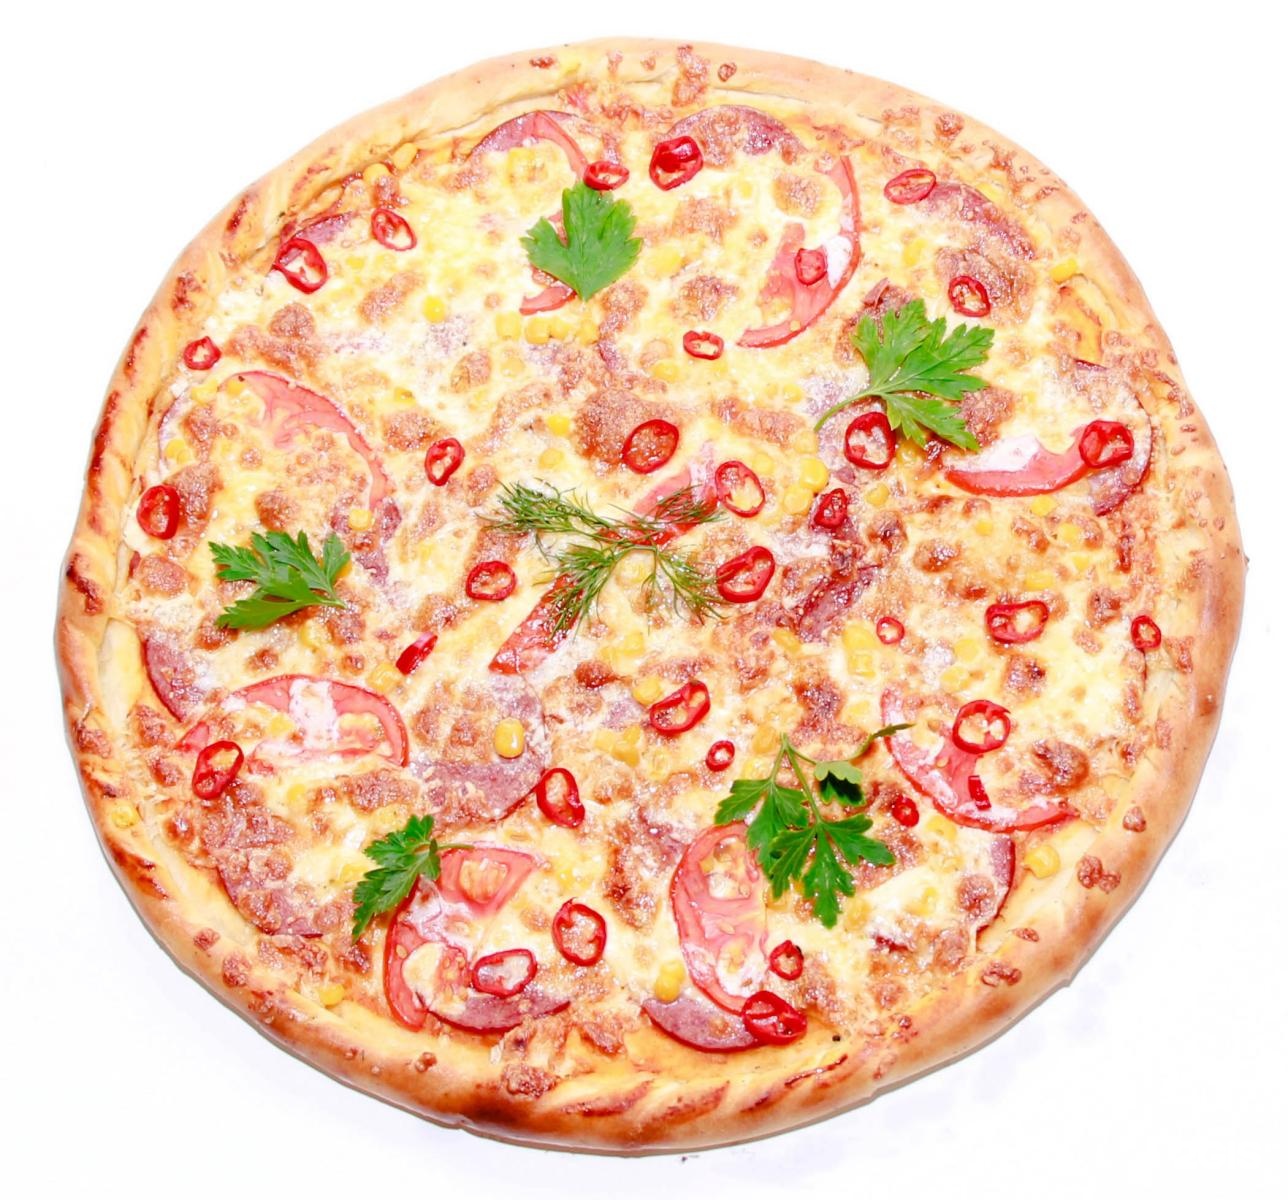 челентано пицца состав фото 20